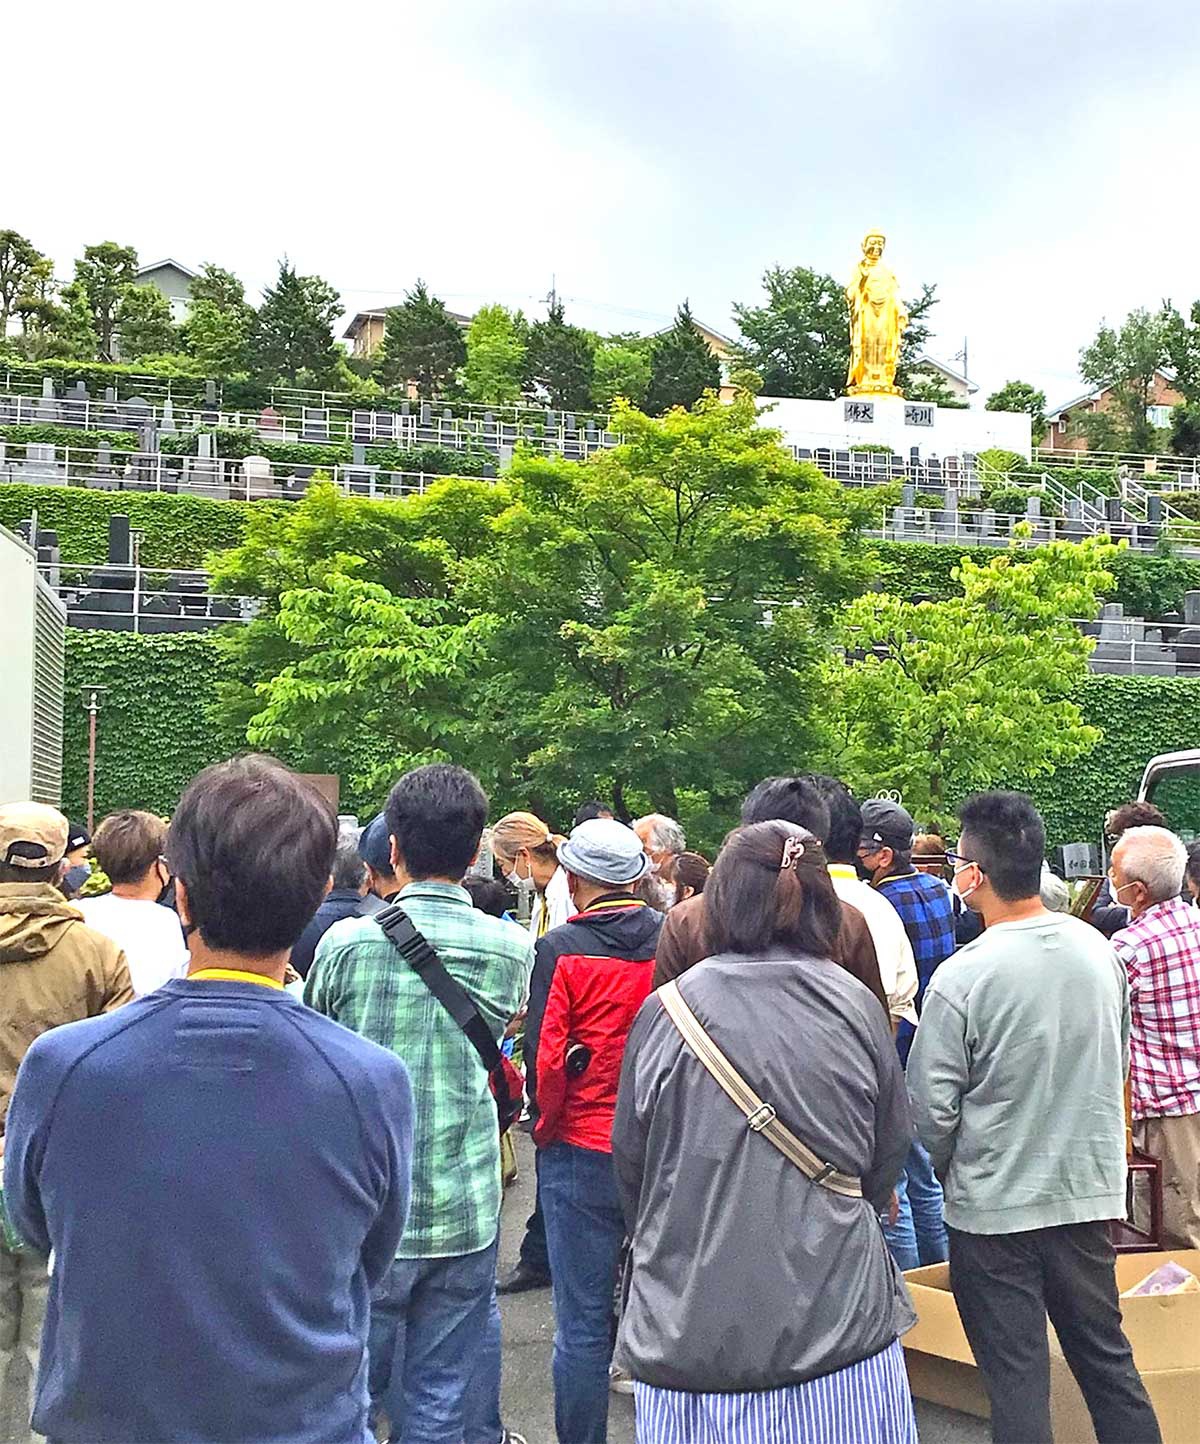 川崎霊園の黄金大仏が見下ろす敷地で競りが行われている